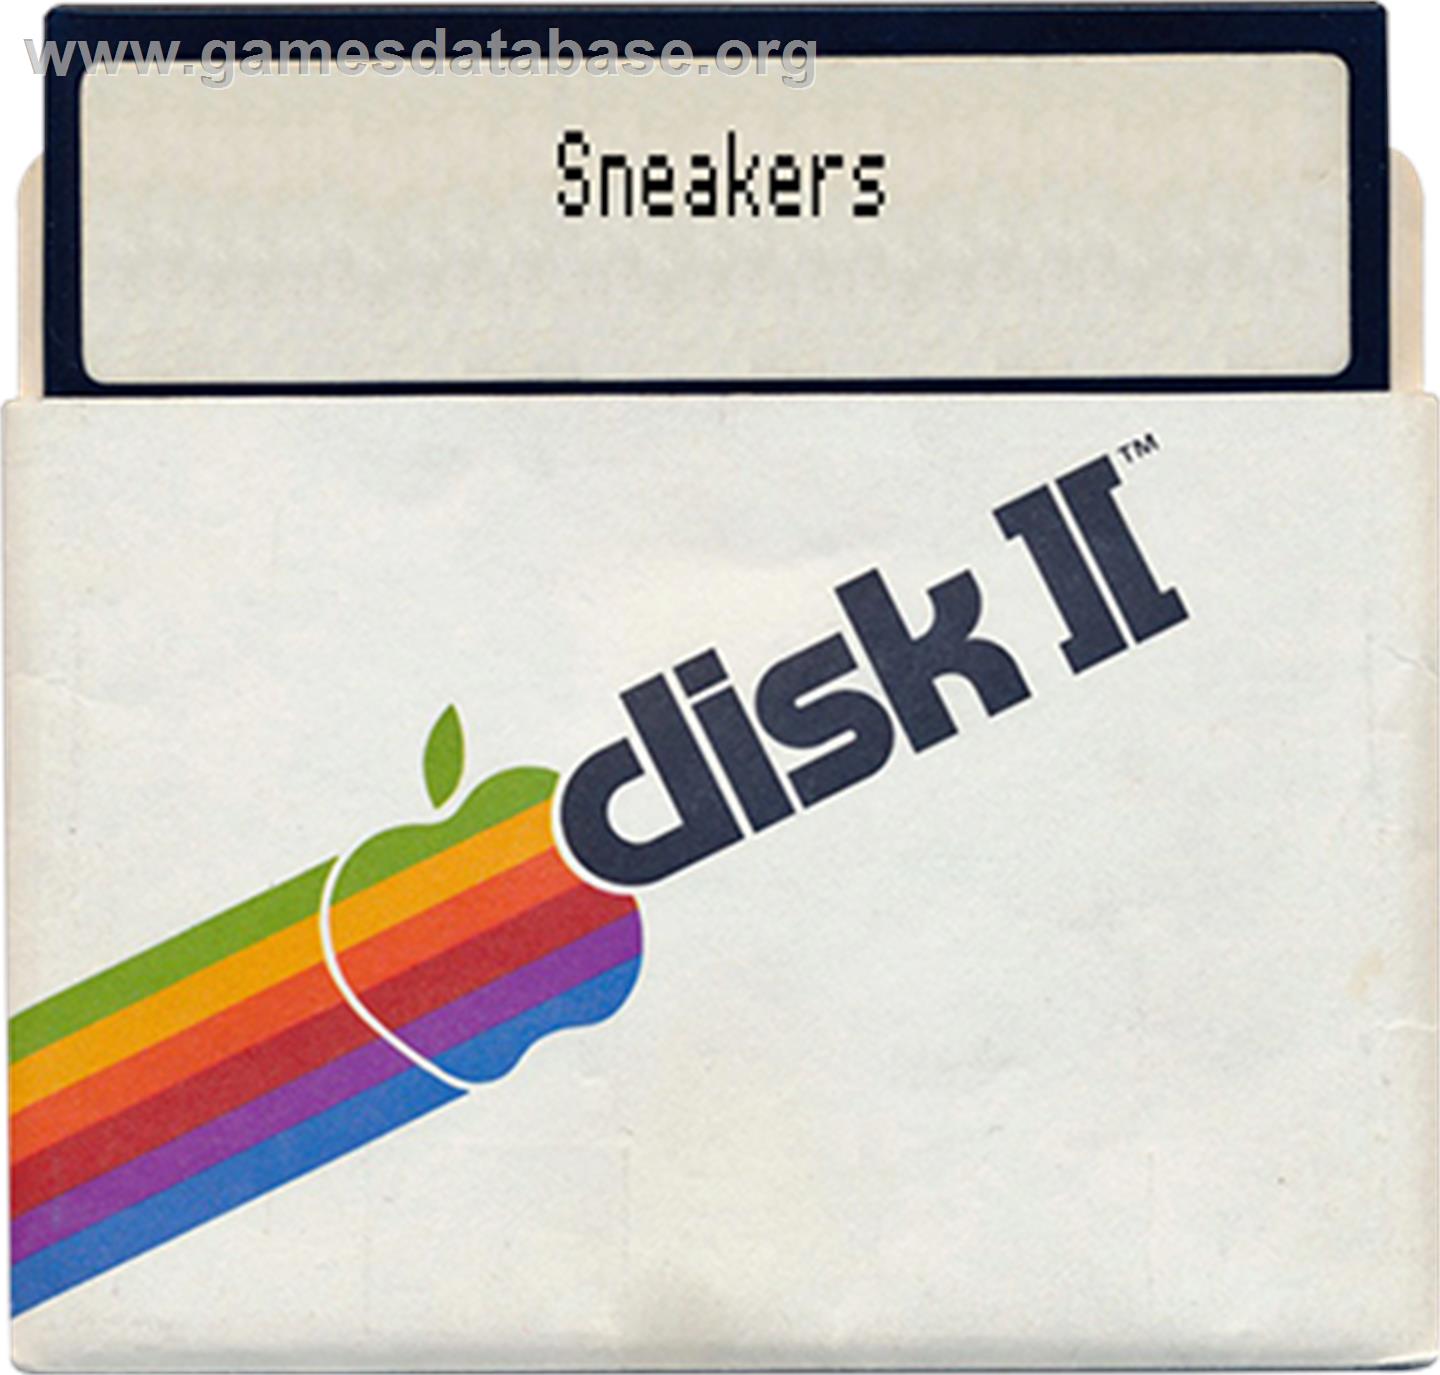 Sneakers - Apple II - Artwork - Disc